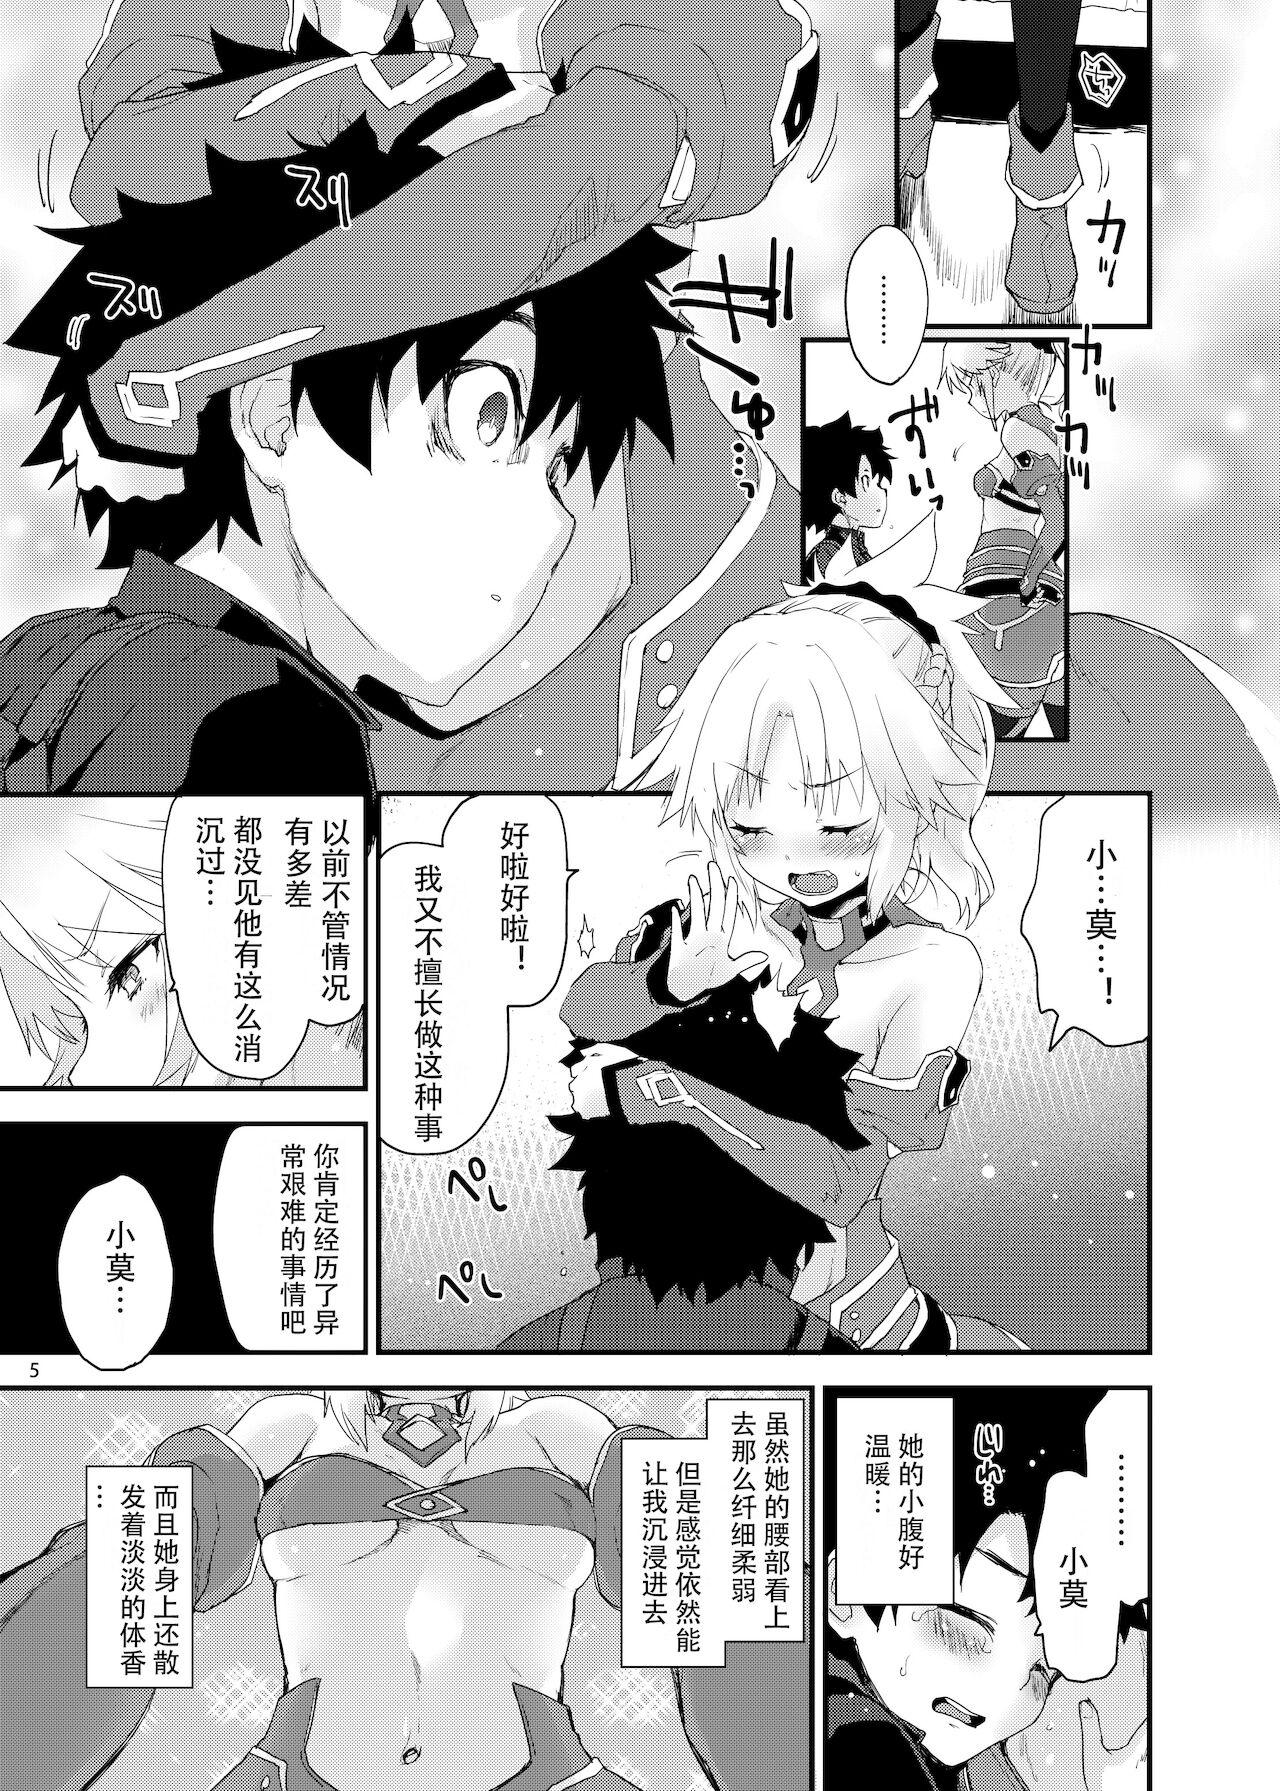 Spreading Gomen ne Mo-san... - Fate grand order Anal Porn - Page 4